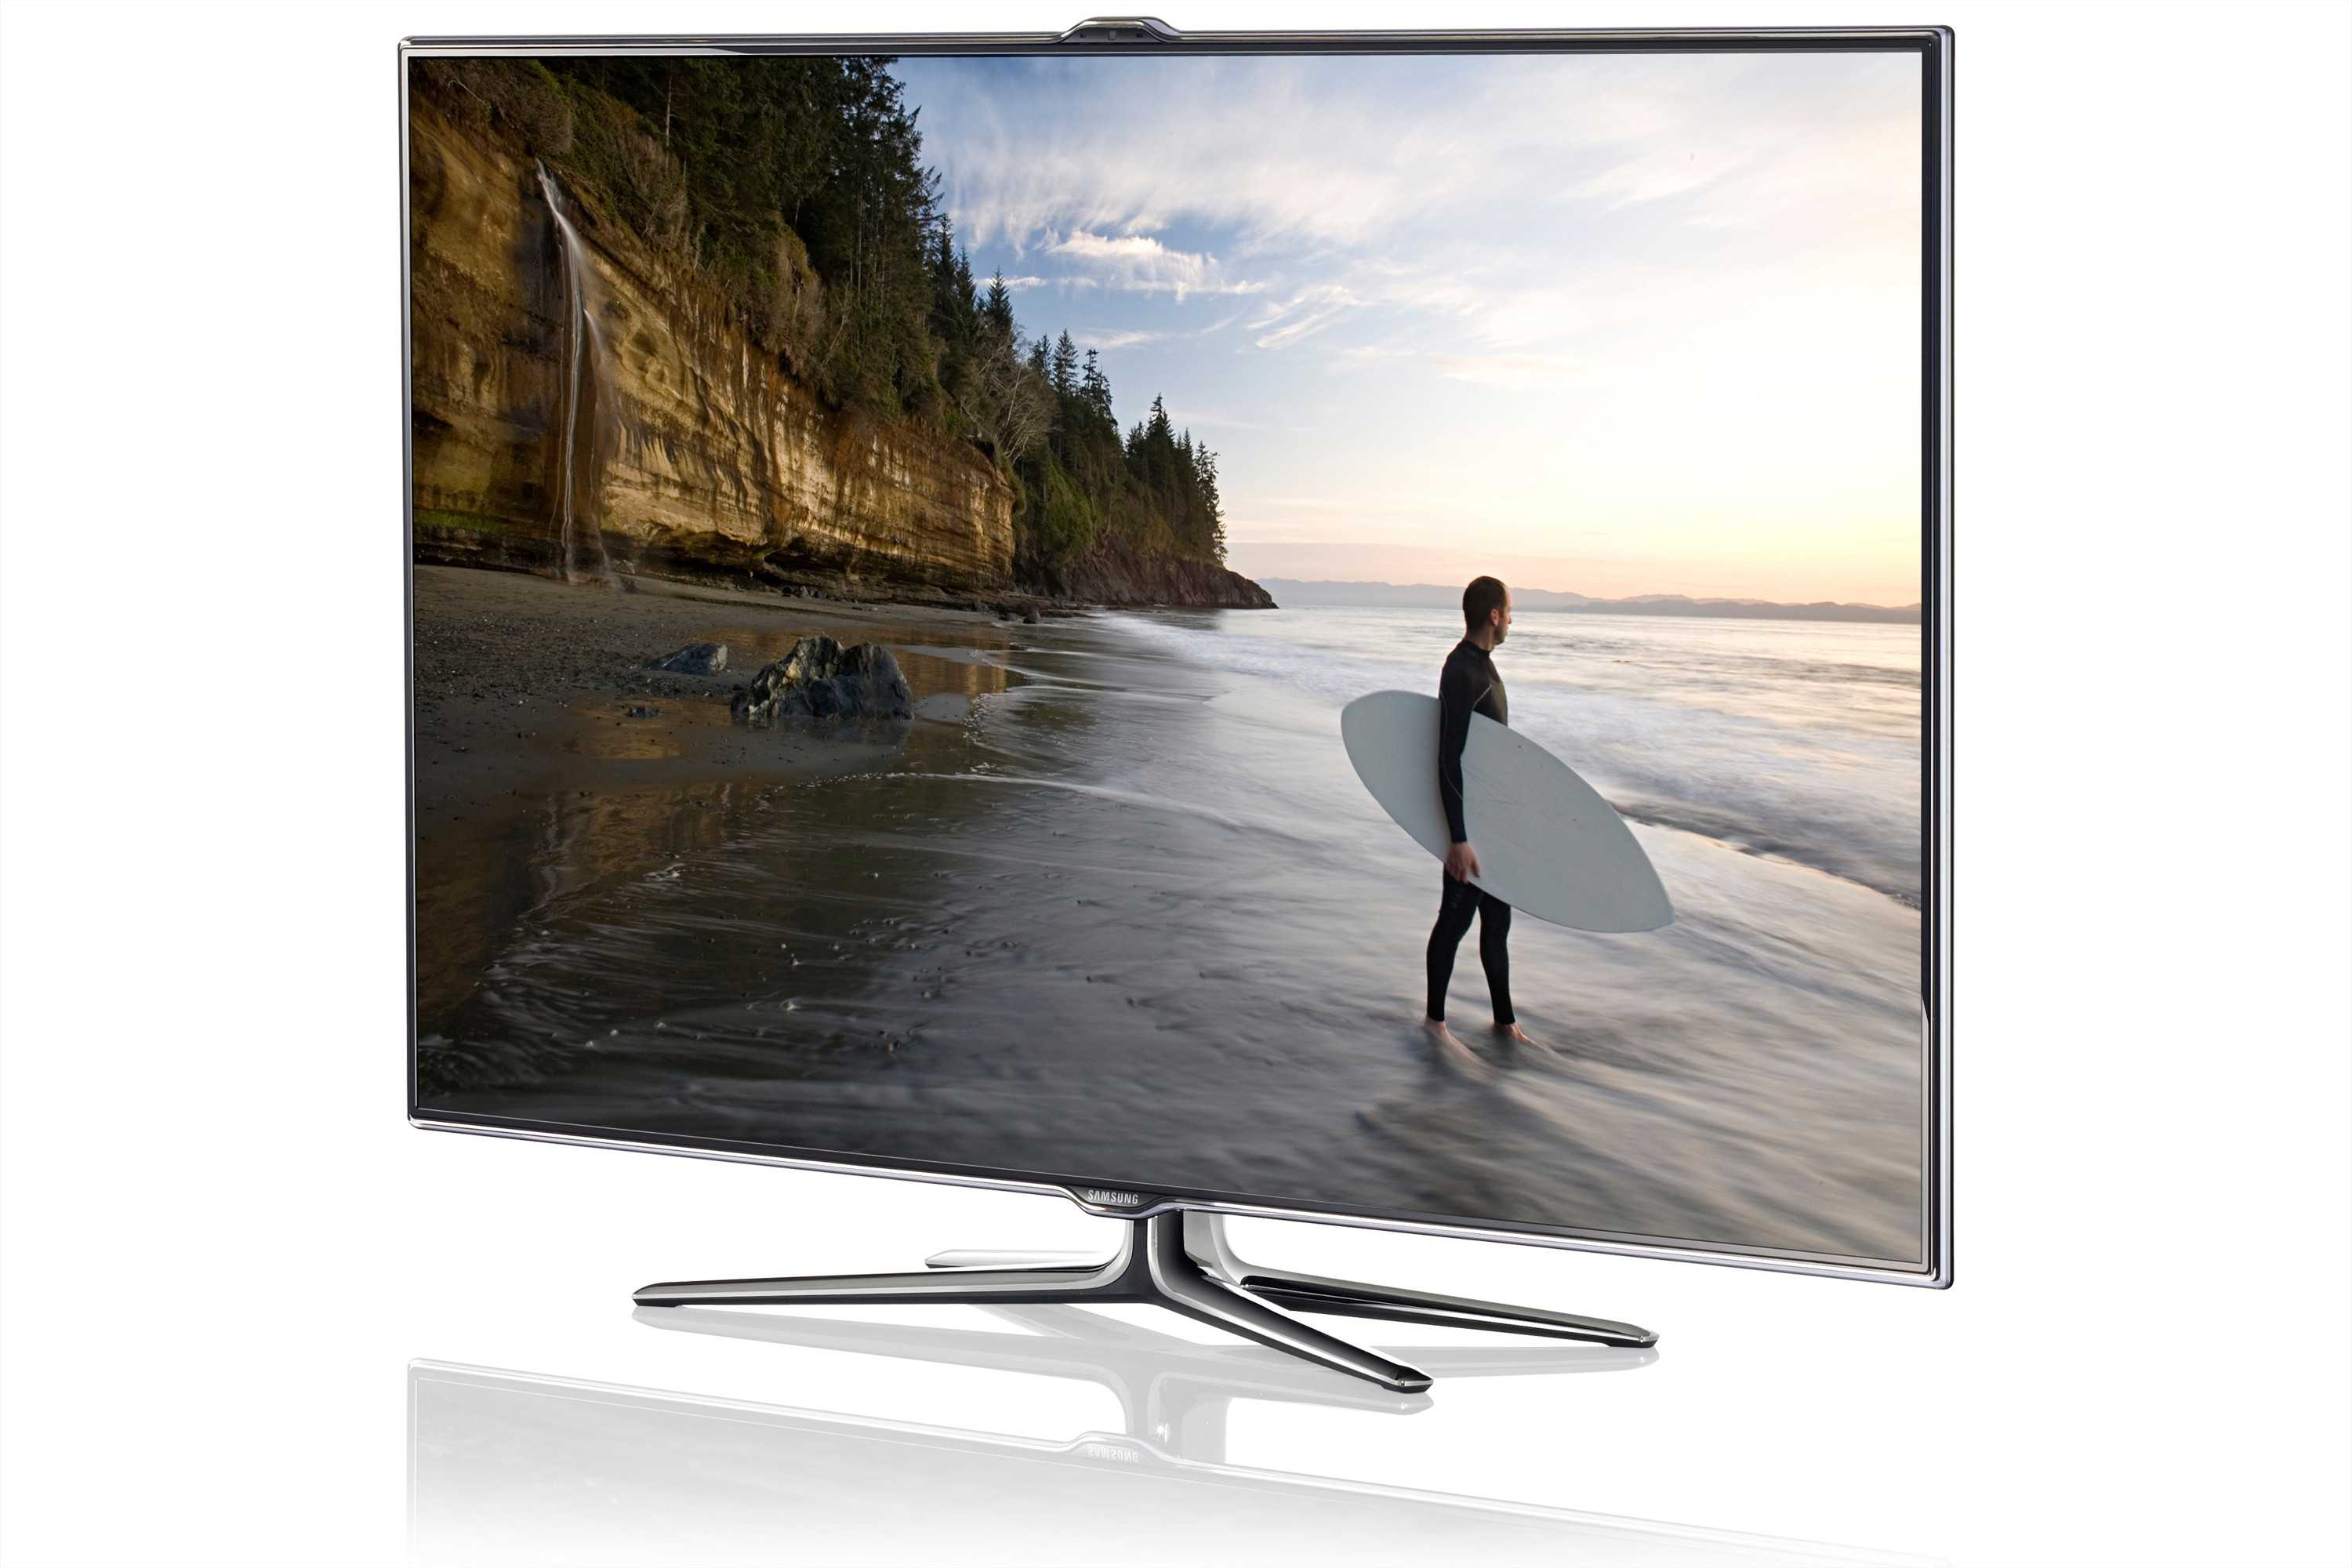 Samsung ue46es7500 - купить , скидки, цена, отзывы, обзор, характеристики - телевизоры